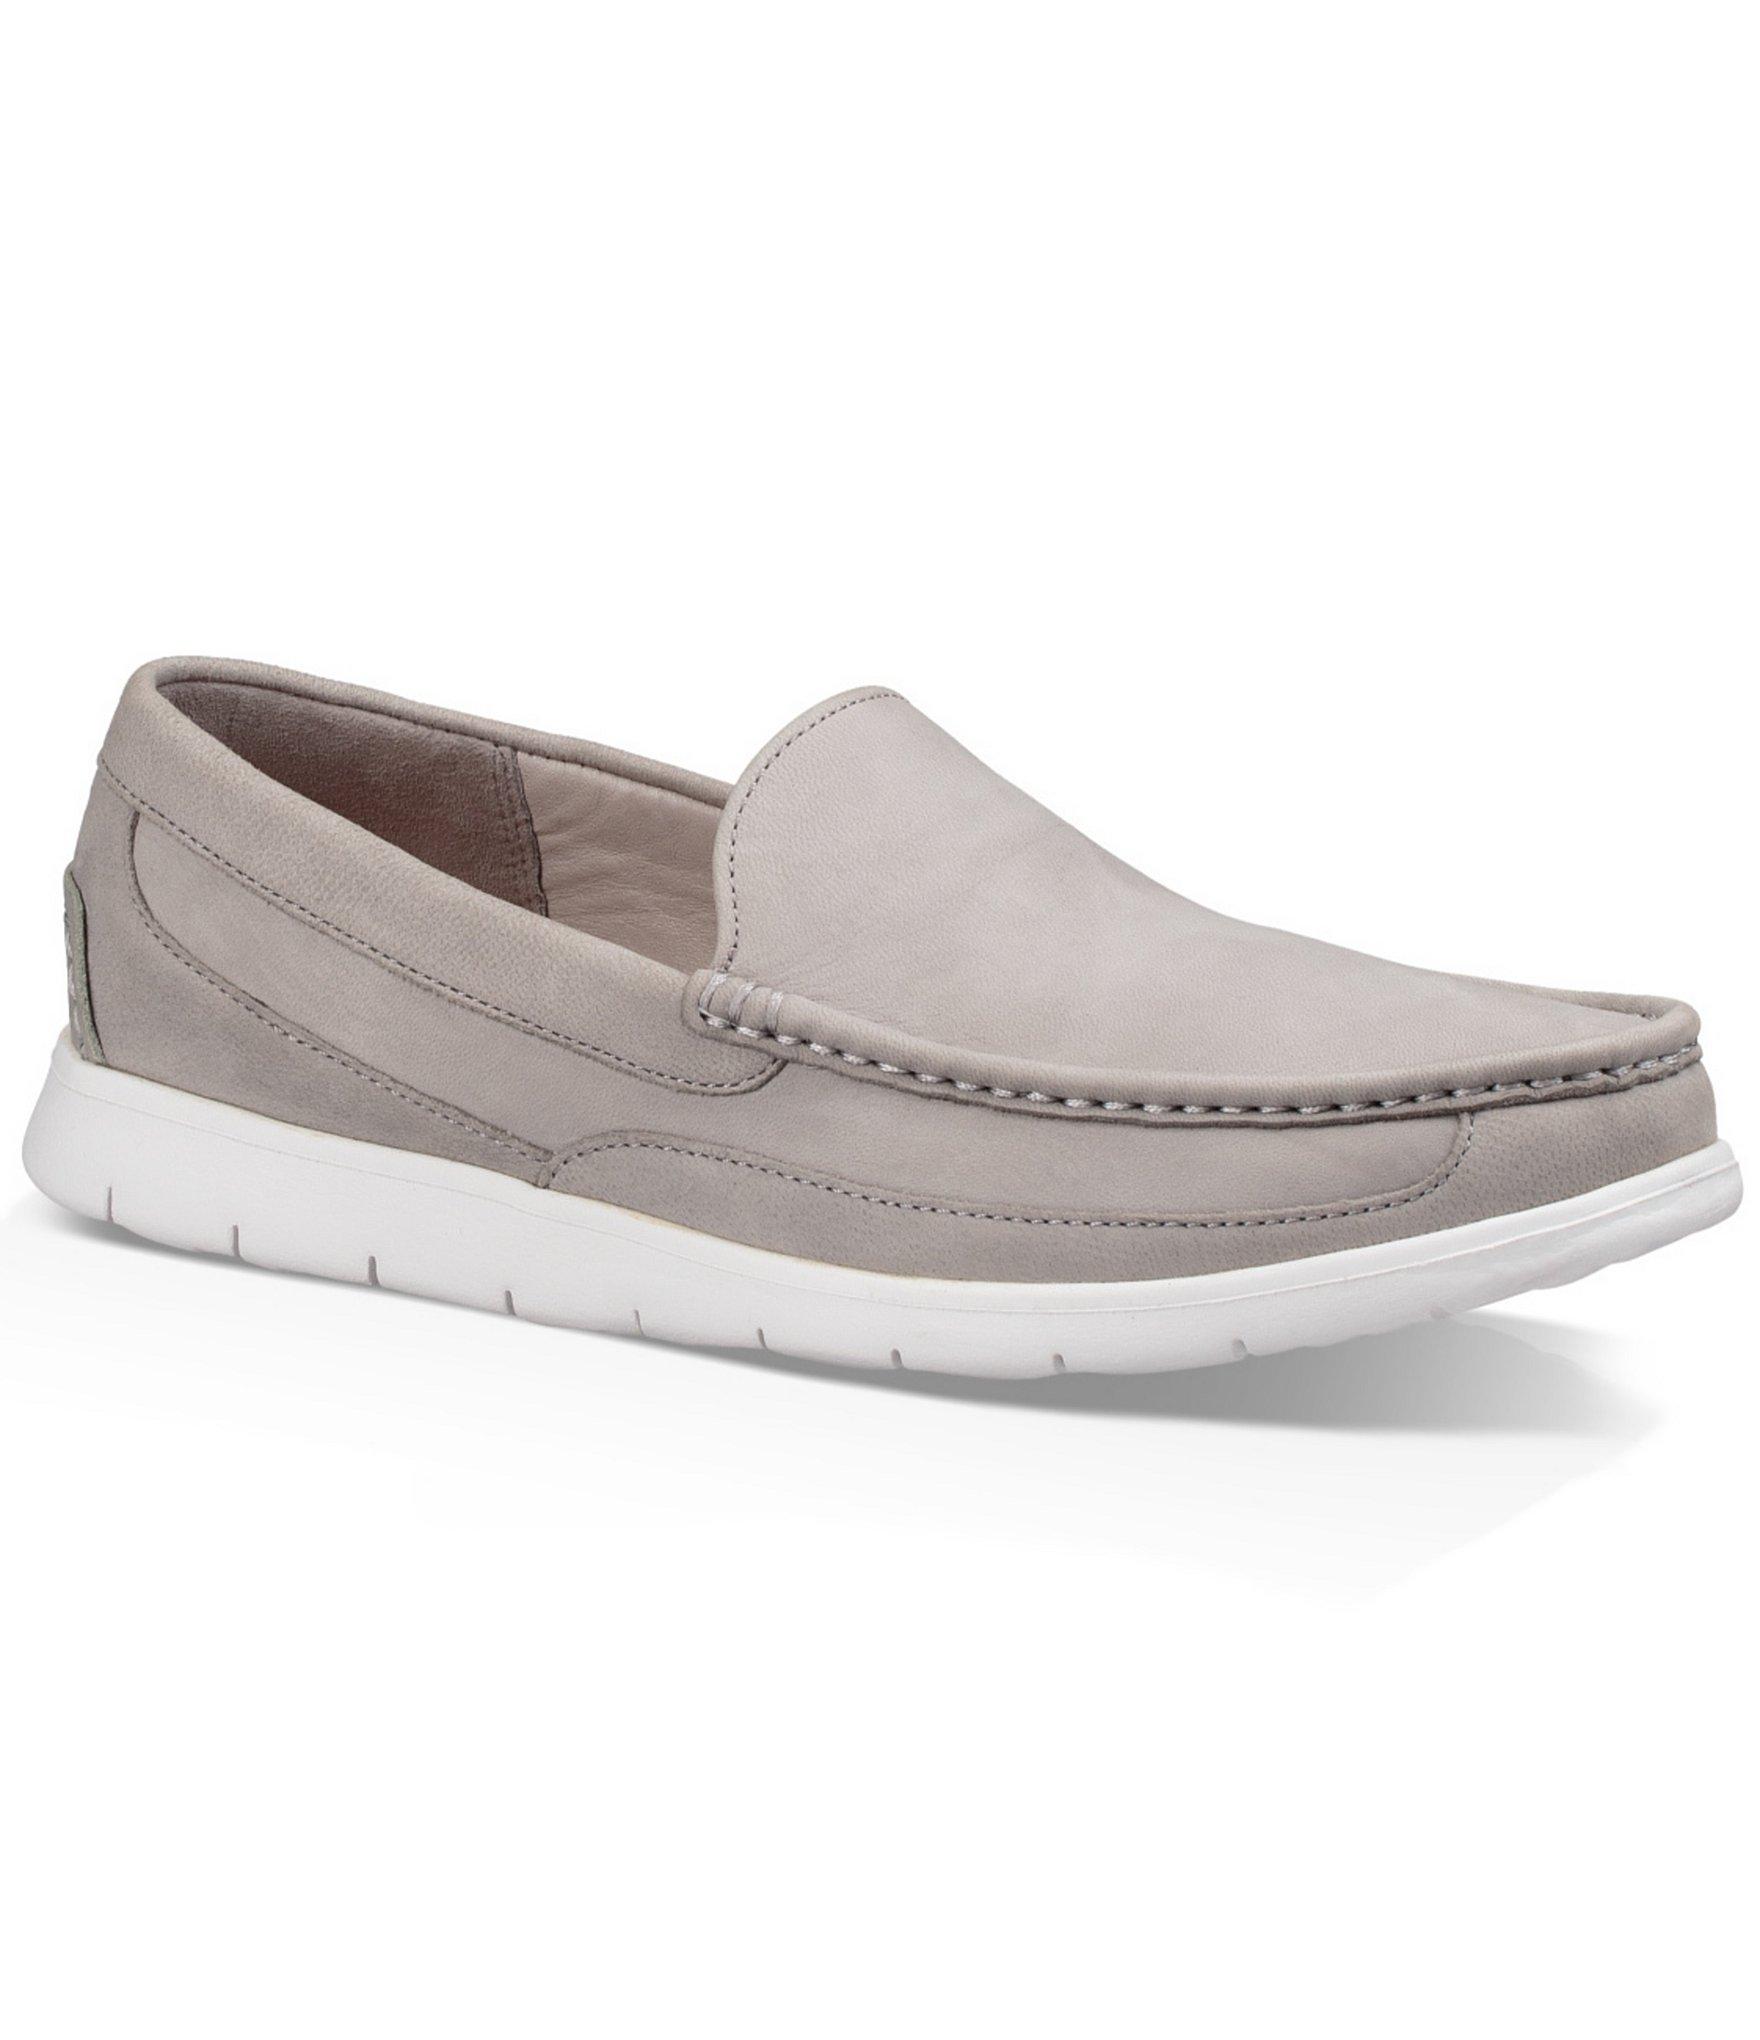 Lyst - Ugg ® Men's Fascot Capra Slip On Shoes in Gray for Men